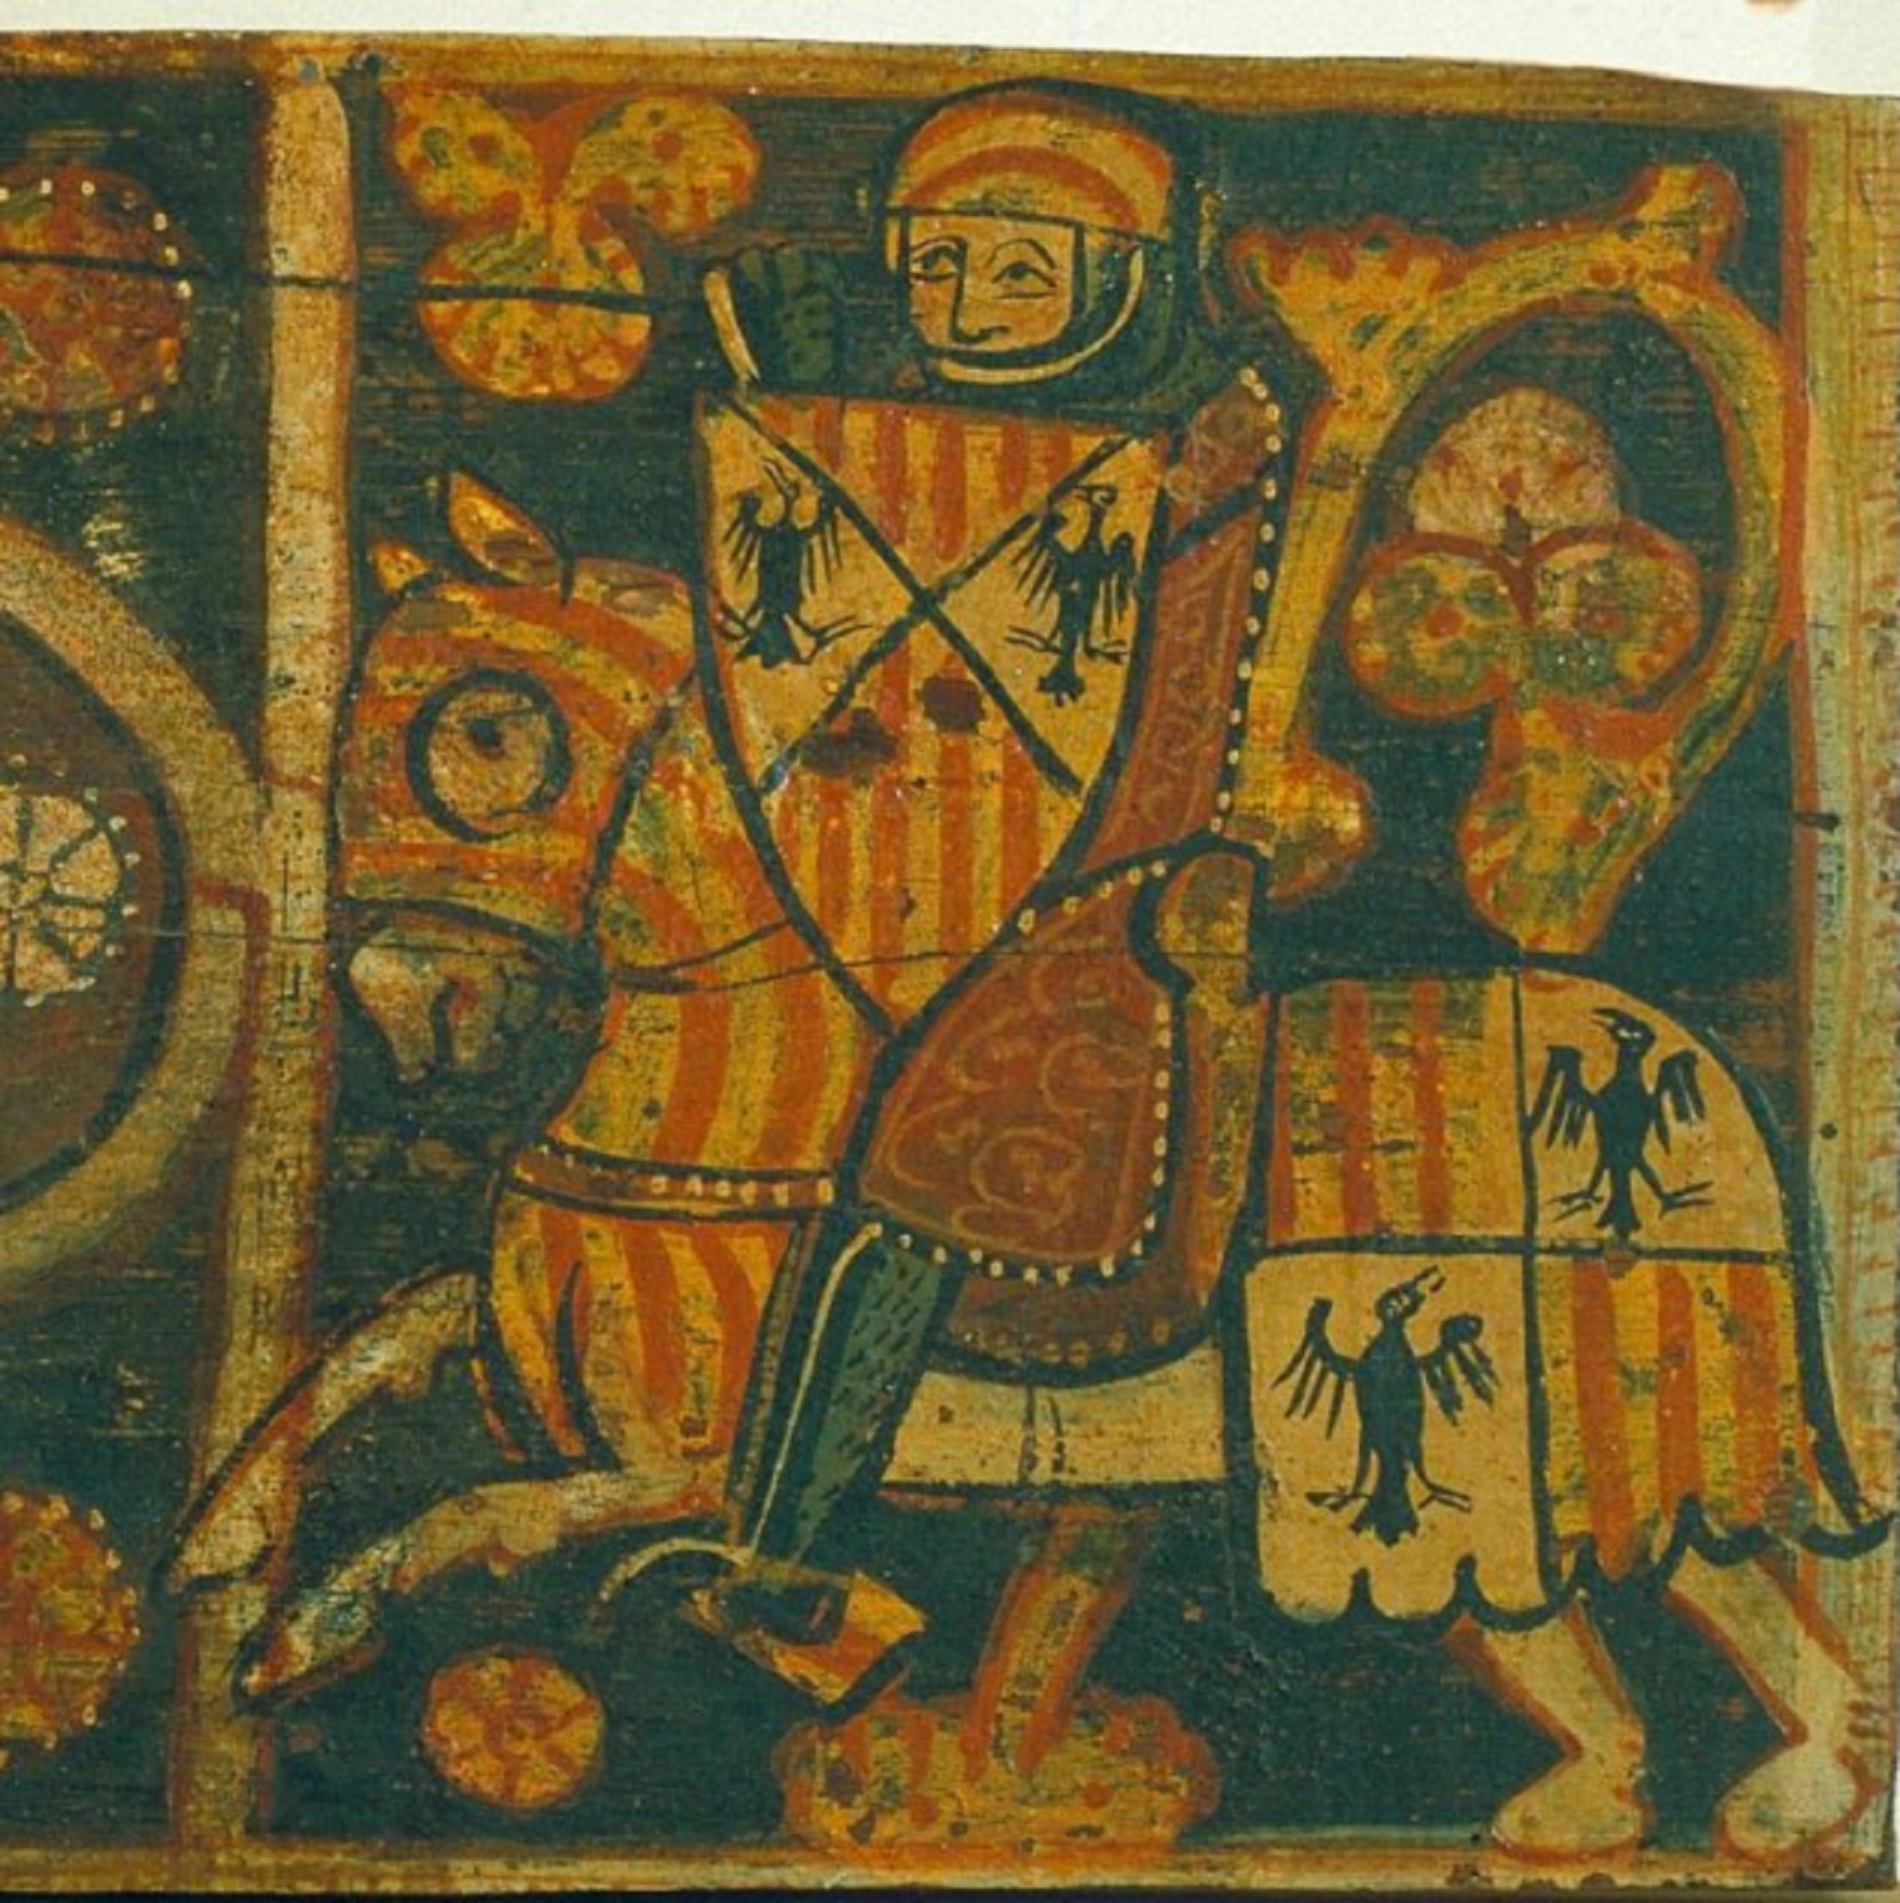 Cavaller amb les armes de l'Aliga Hohenstaufen (Sicilia) i el Senyal Reial (Catalunya i Aragó). Font Museu Nacional d'Art de Catalunya